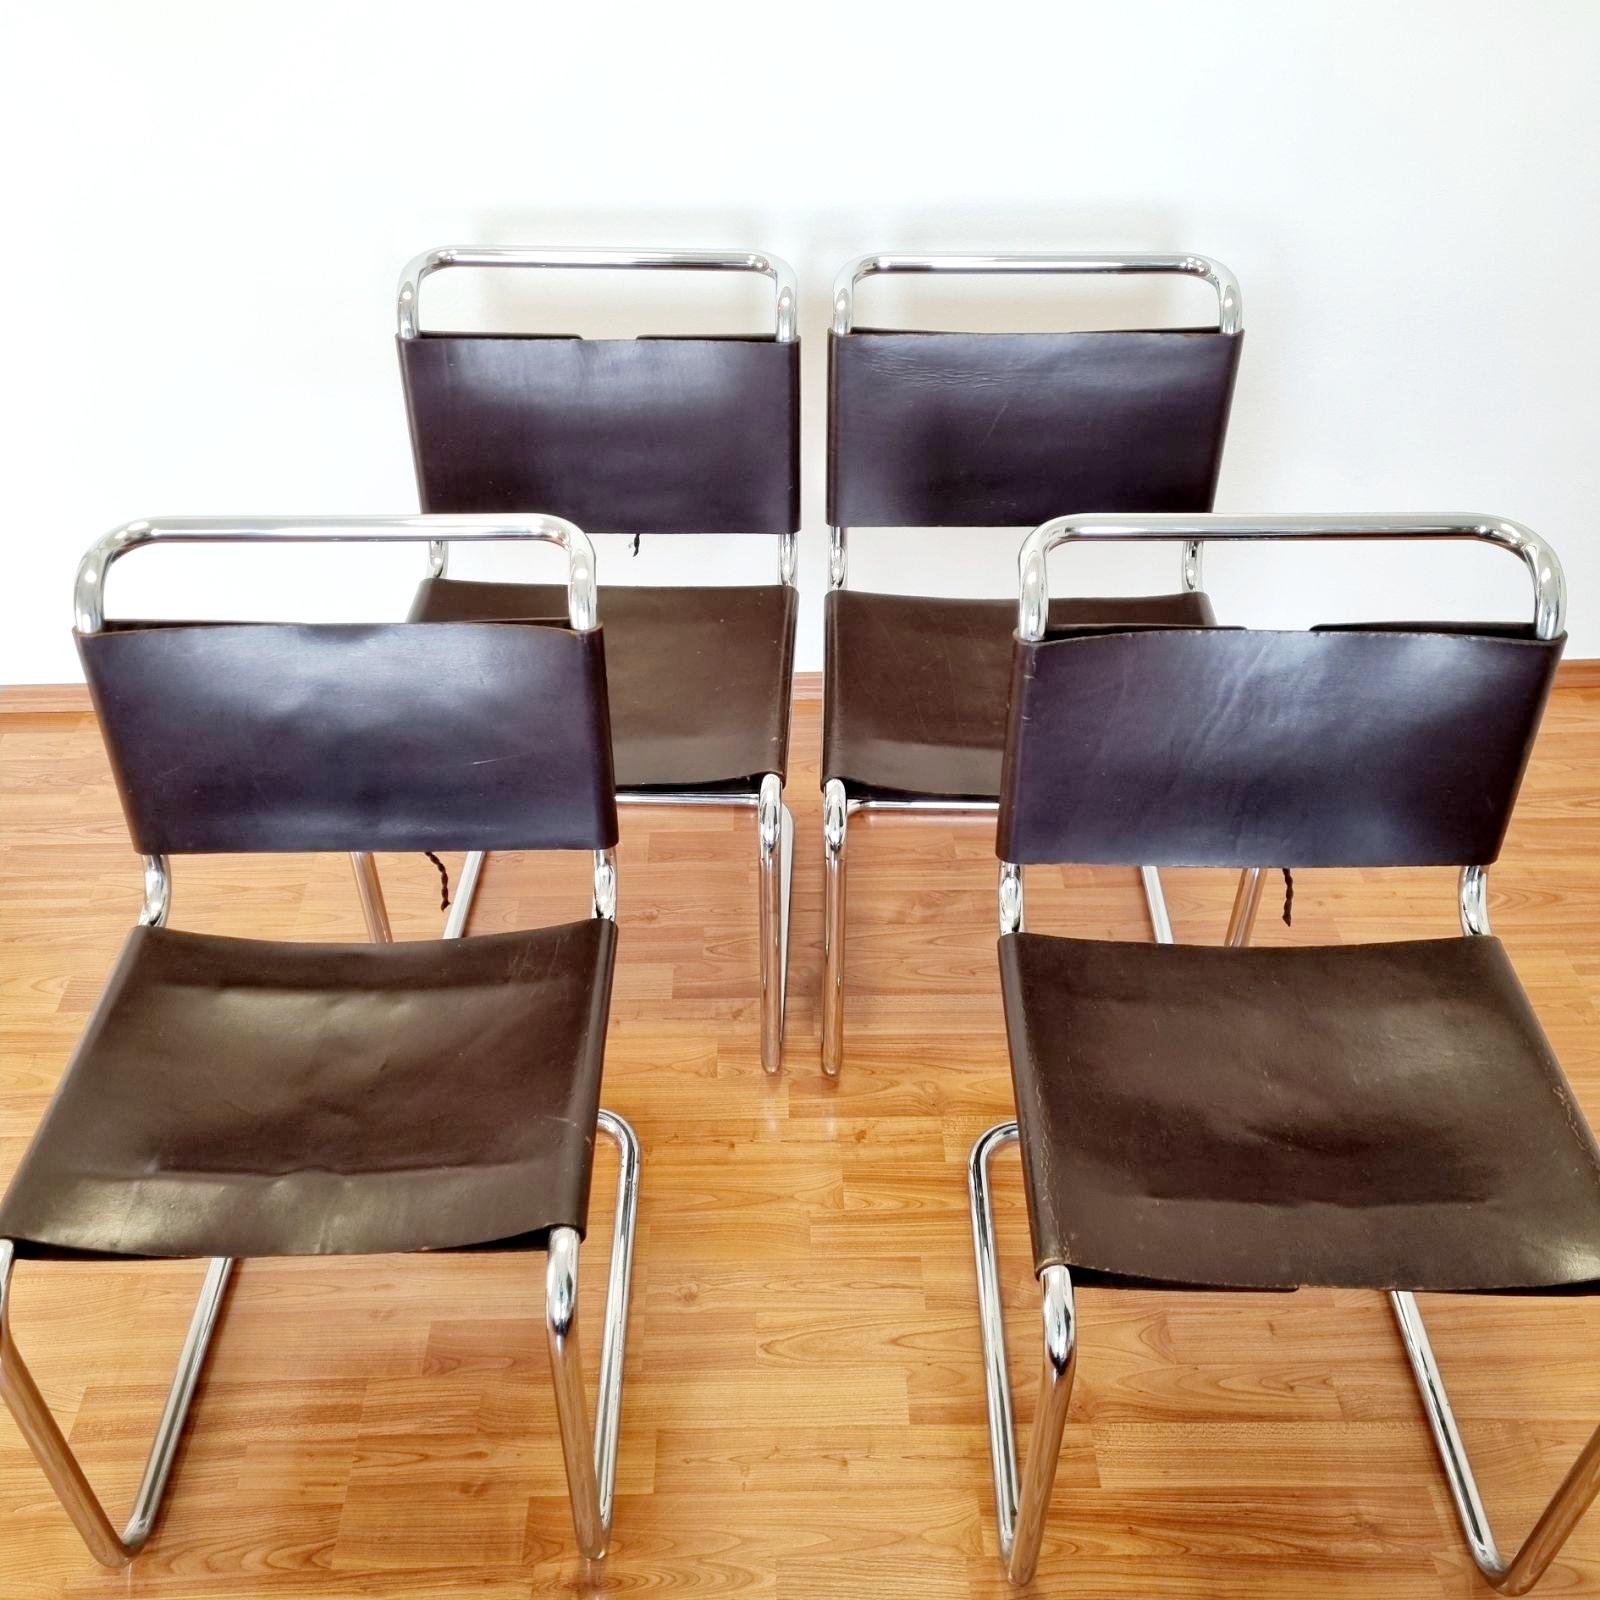 Ensemble de 4 chaises B33 conçues par Marcel Breuer en cuir brun foncé. Produit par Gavina dans les années 60.

Ils sont en bon état vintage avec des traces mineures d'âge, comme visible sur les photos.